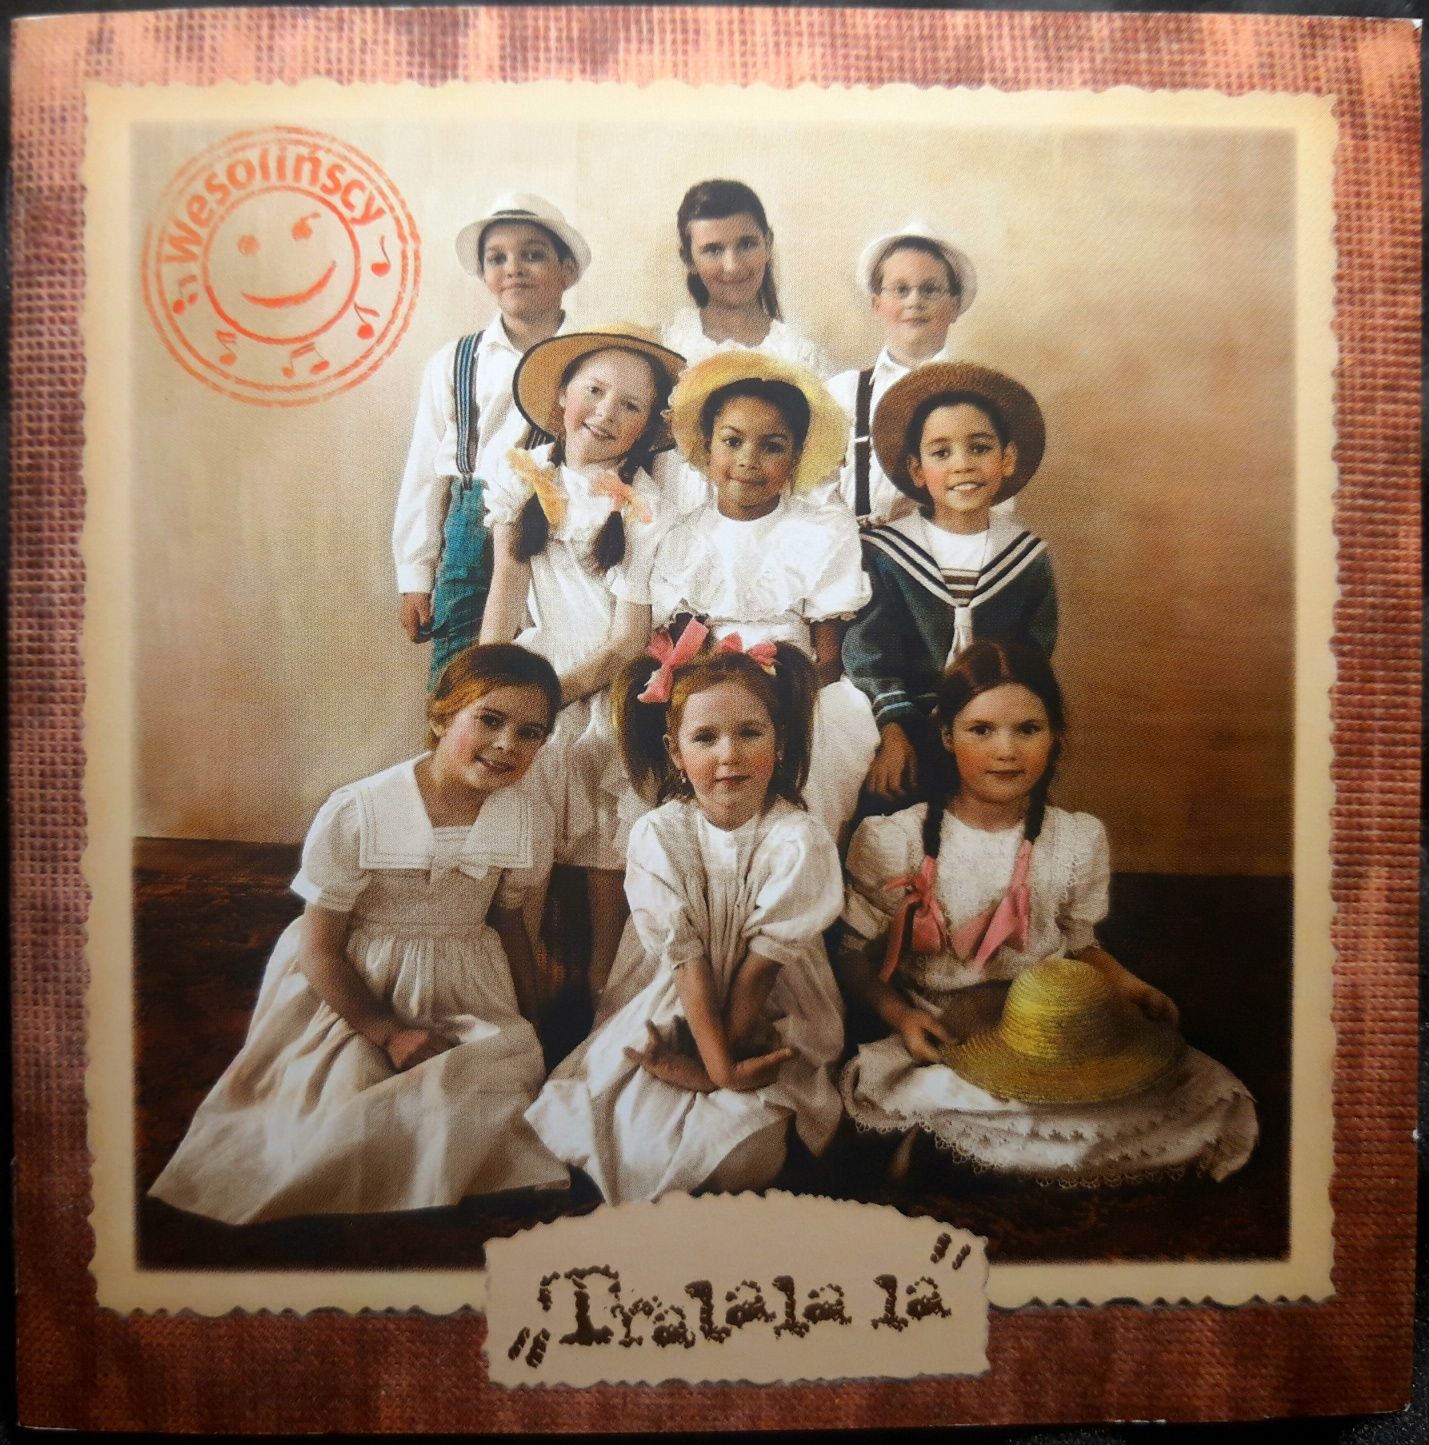 Wesolińscy - Trala la la (CD, 2010?)